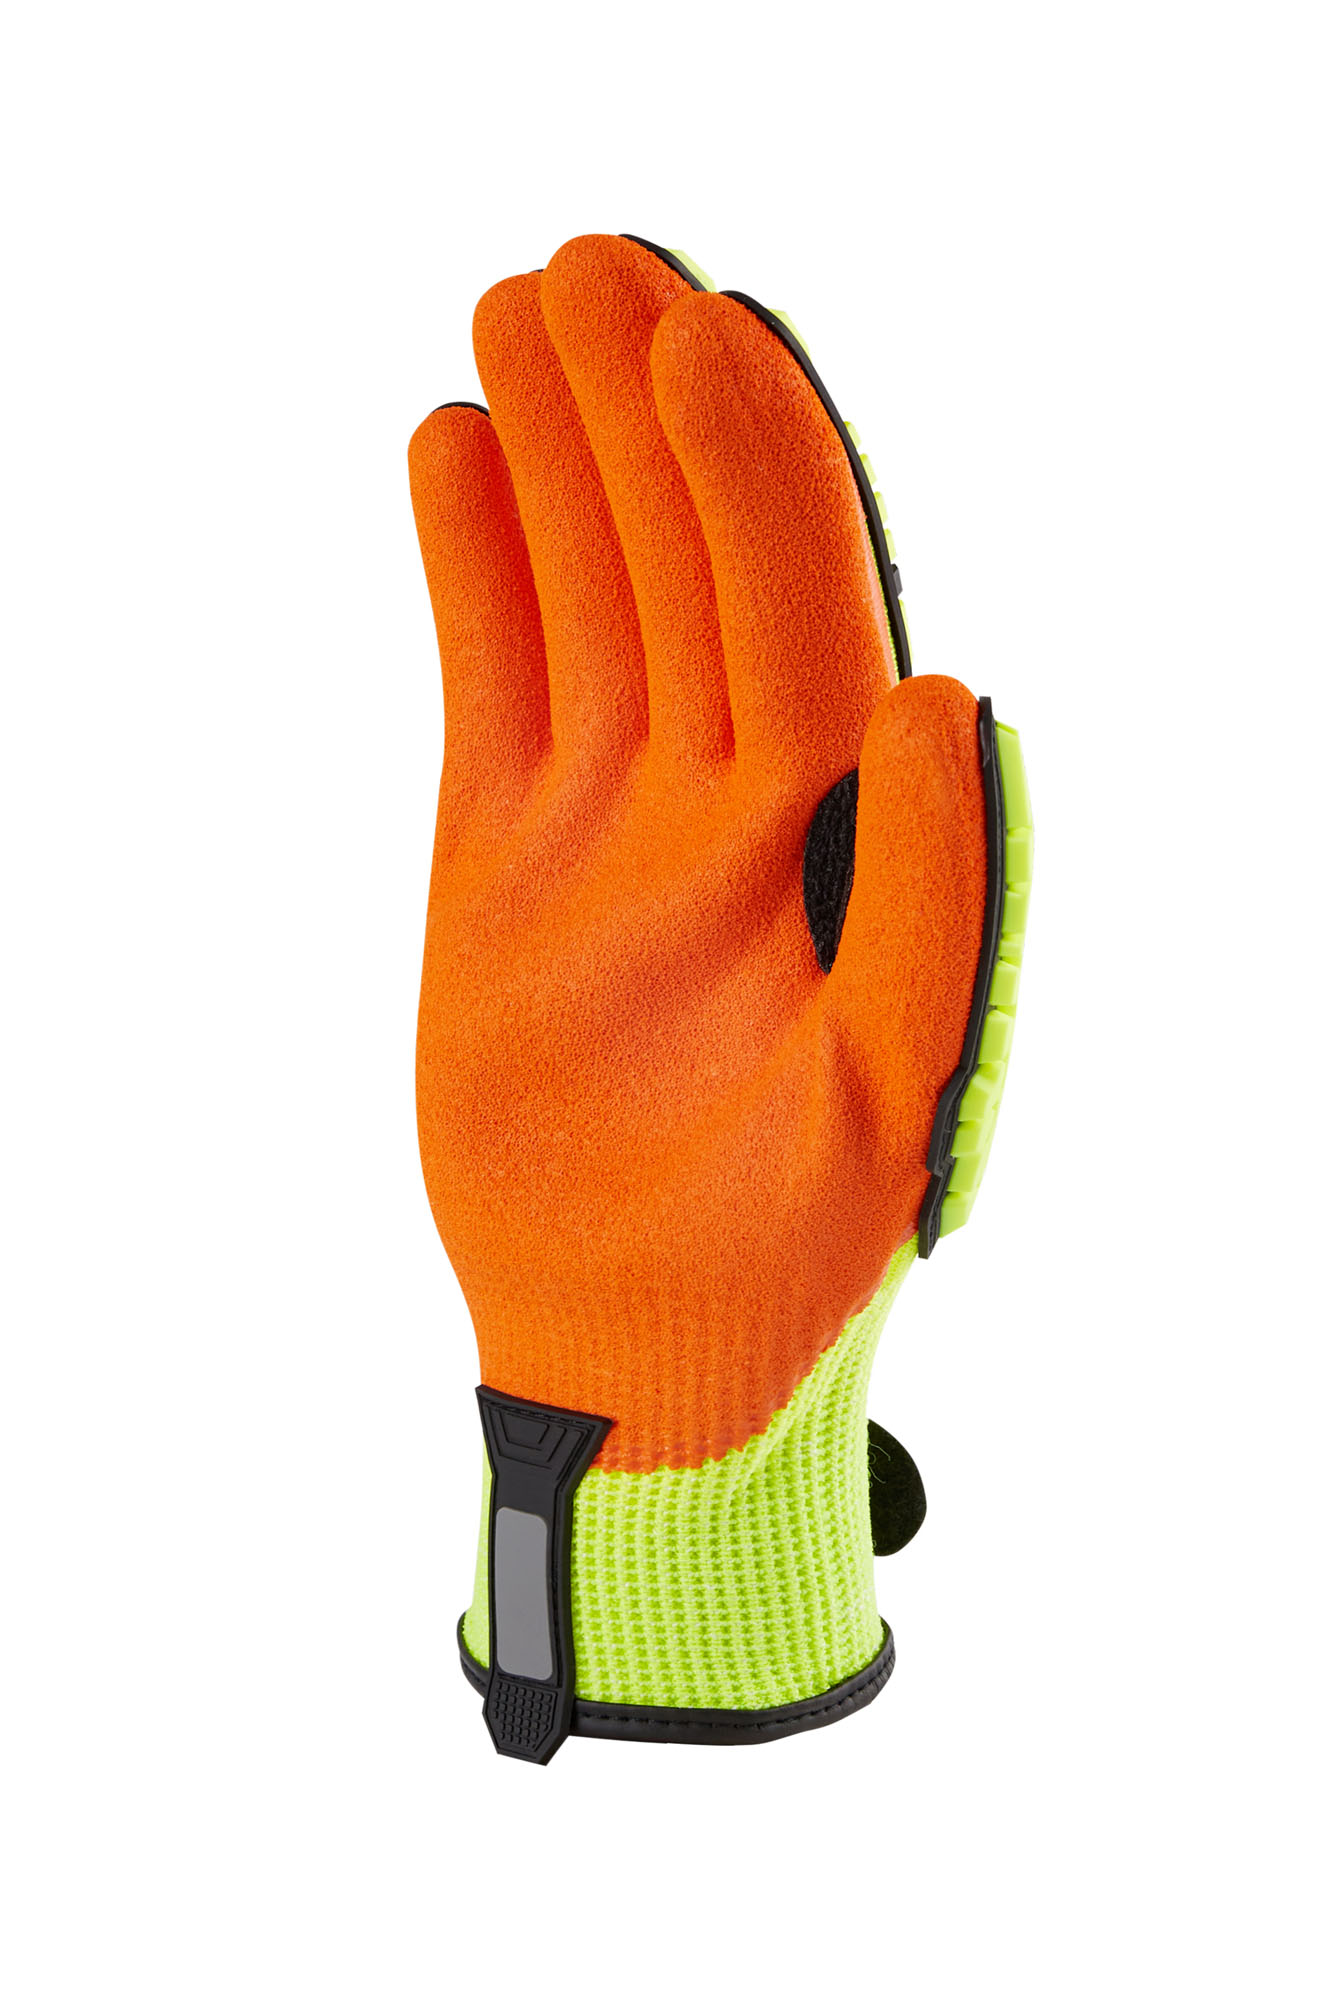 E2 Silicone Dotted Palm Cotton Glove - WorkXwear